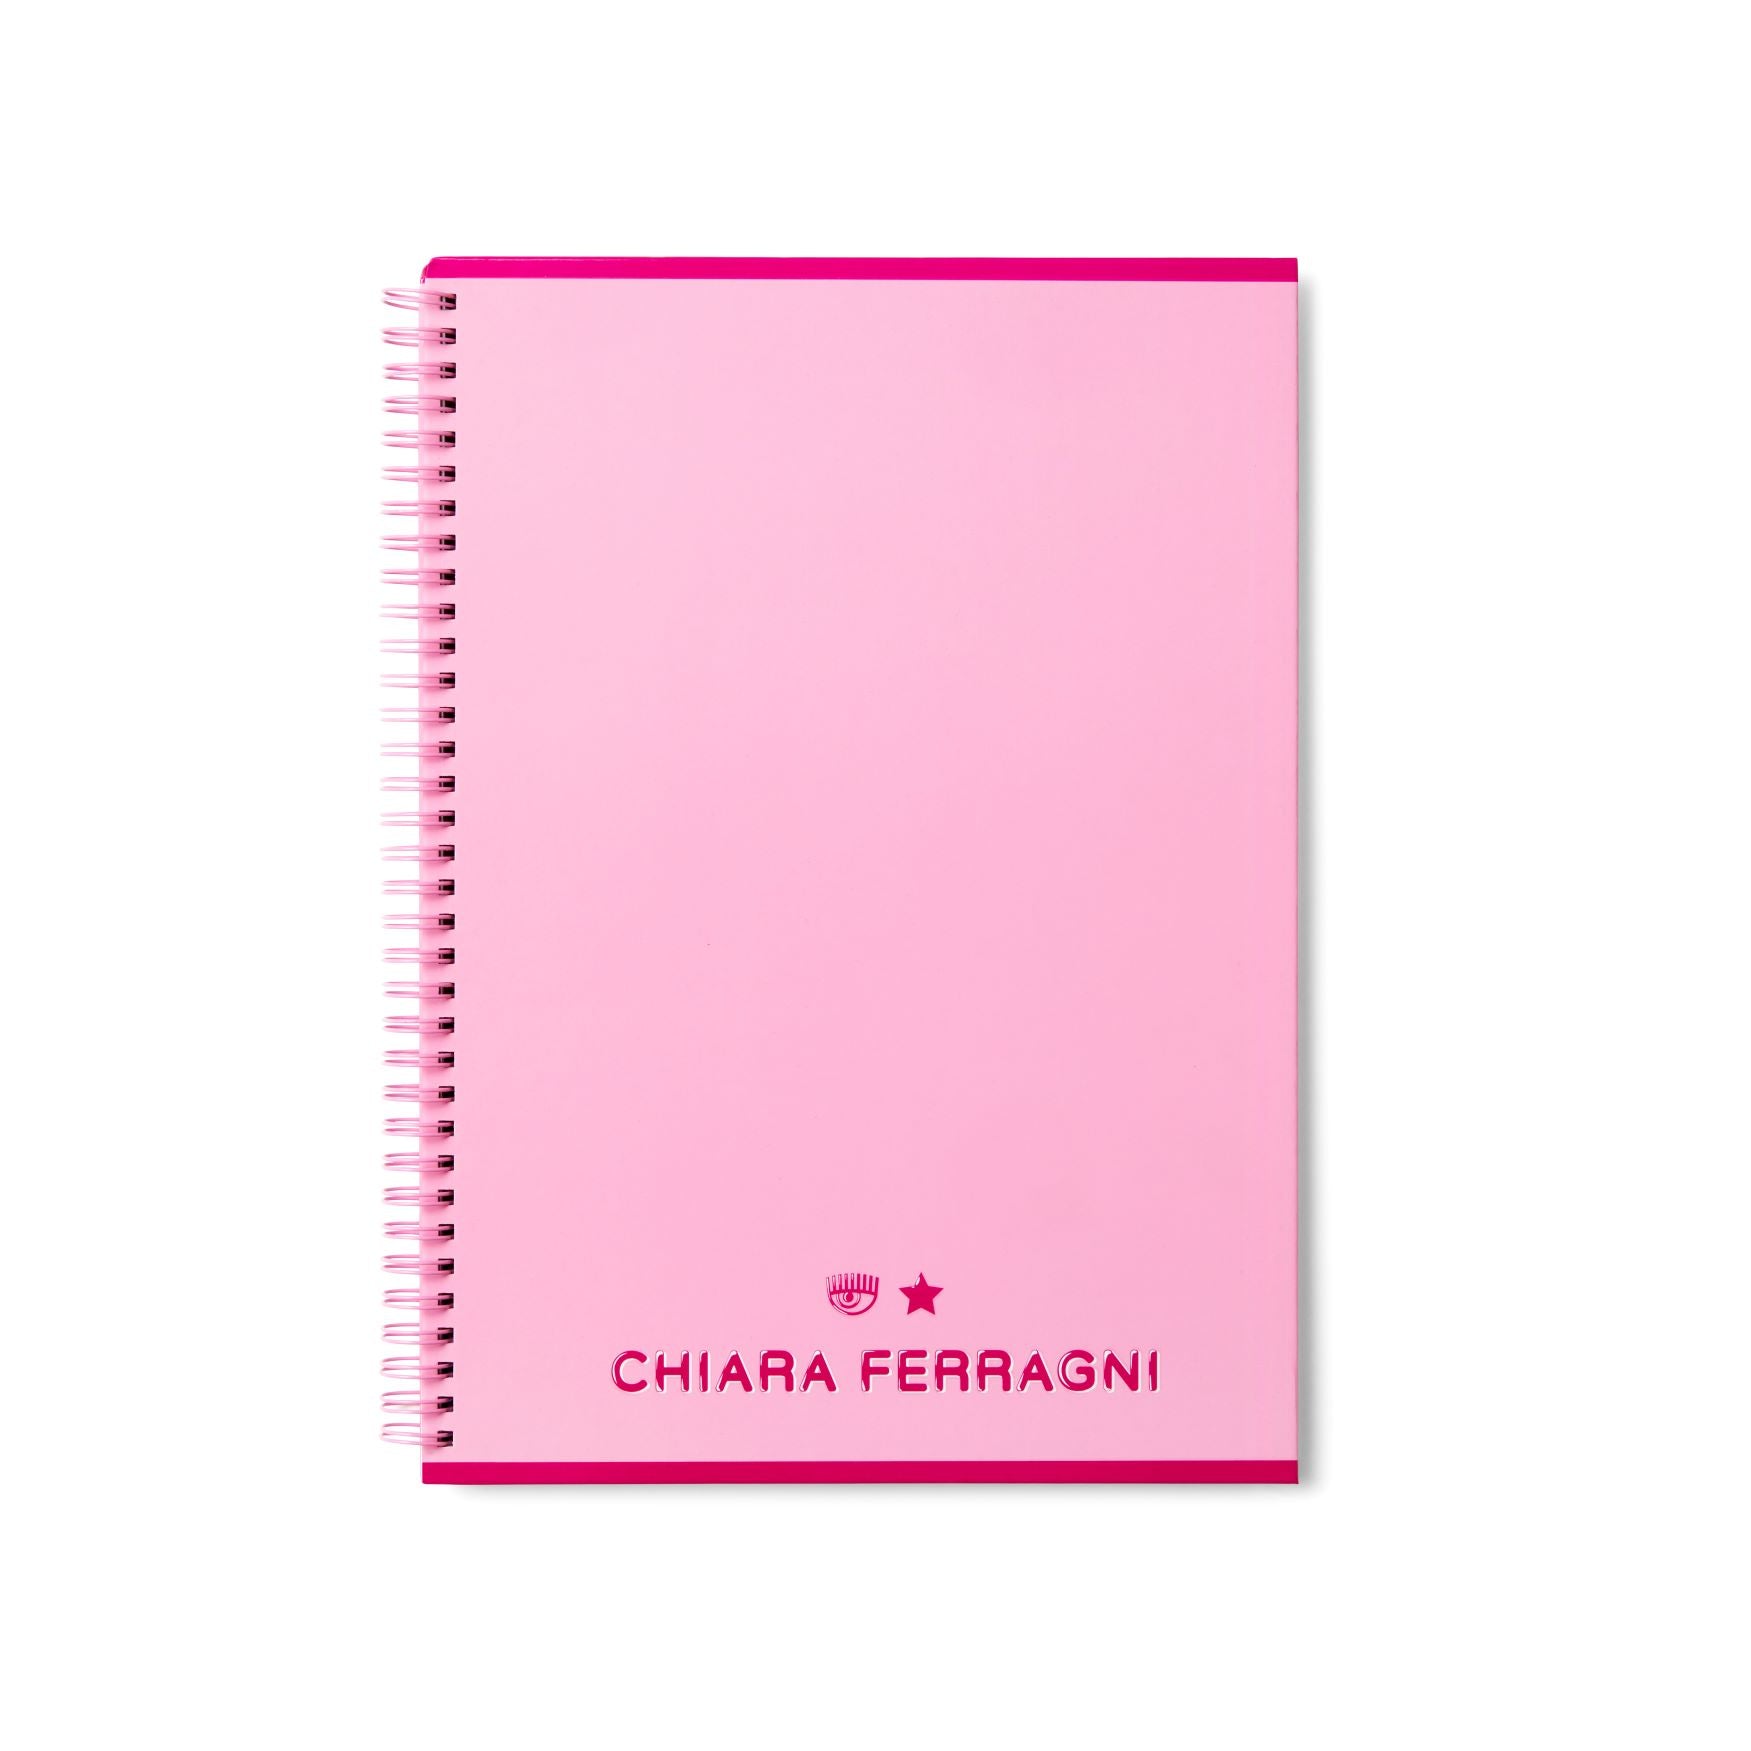 A4 SQUARED SPIRAL NOTEBOOK – Chiara Ferragni Brand